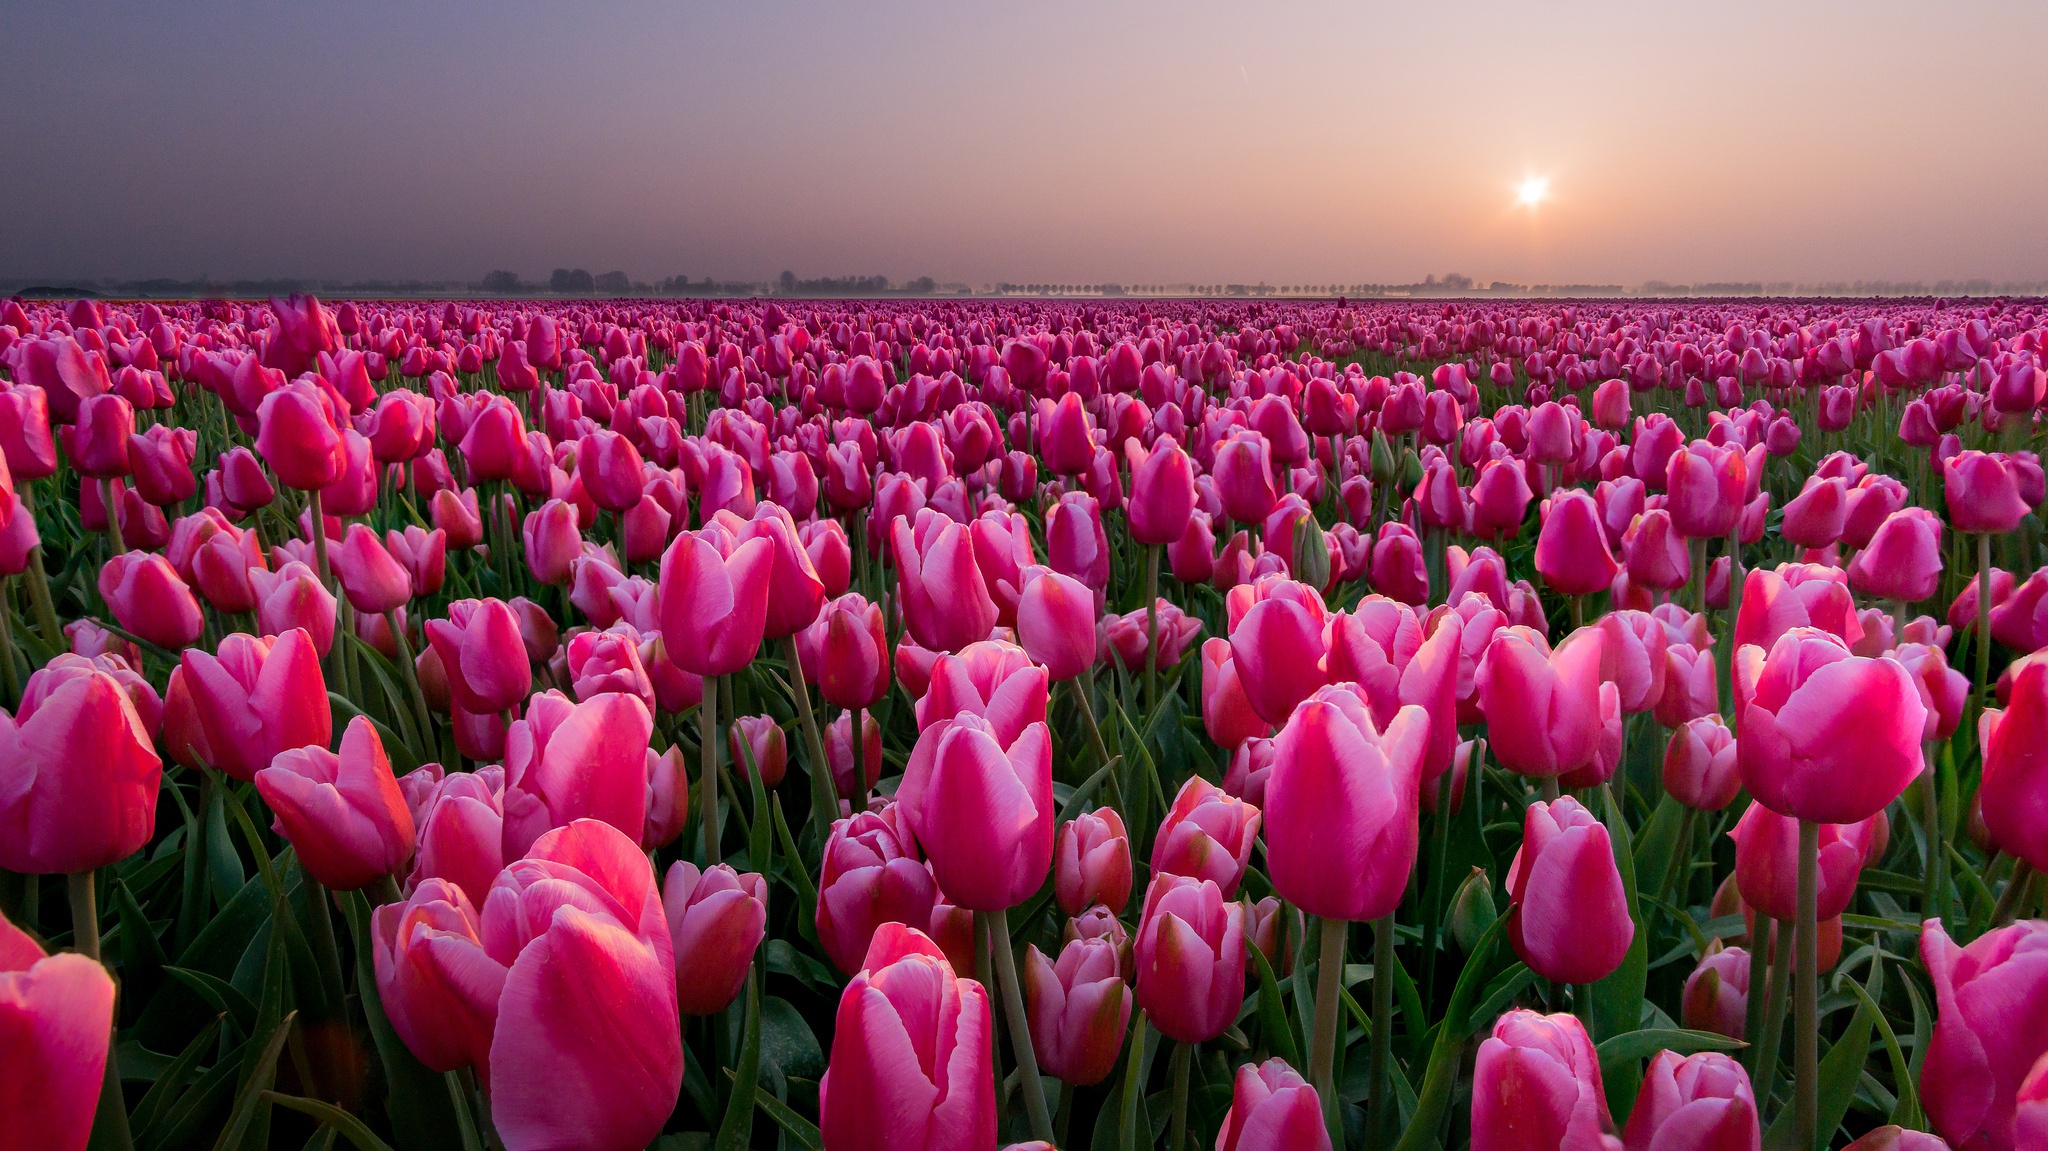 Нидерланды, поле тюльпанов, цветы, закат, вечер, розовые тюльпаны, красота, пейзаж, Netherlands, field of tulips, flowers, sunset, evening, pink tulips, beauty, landscape